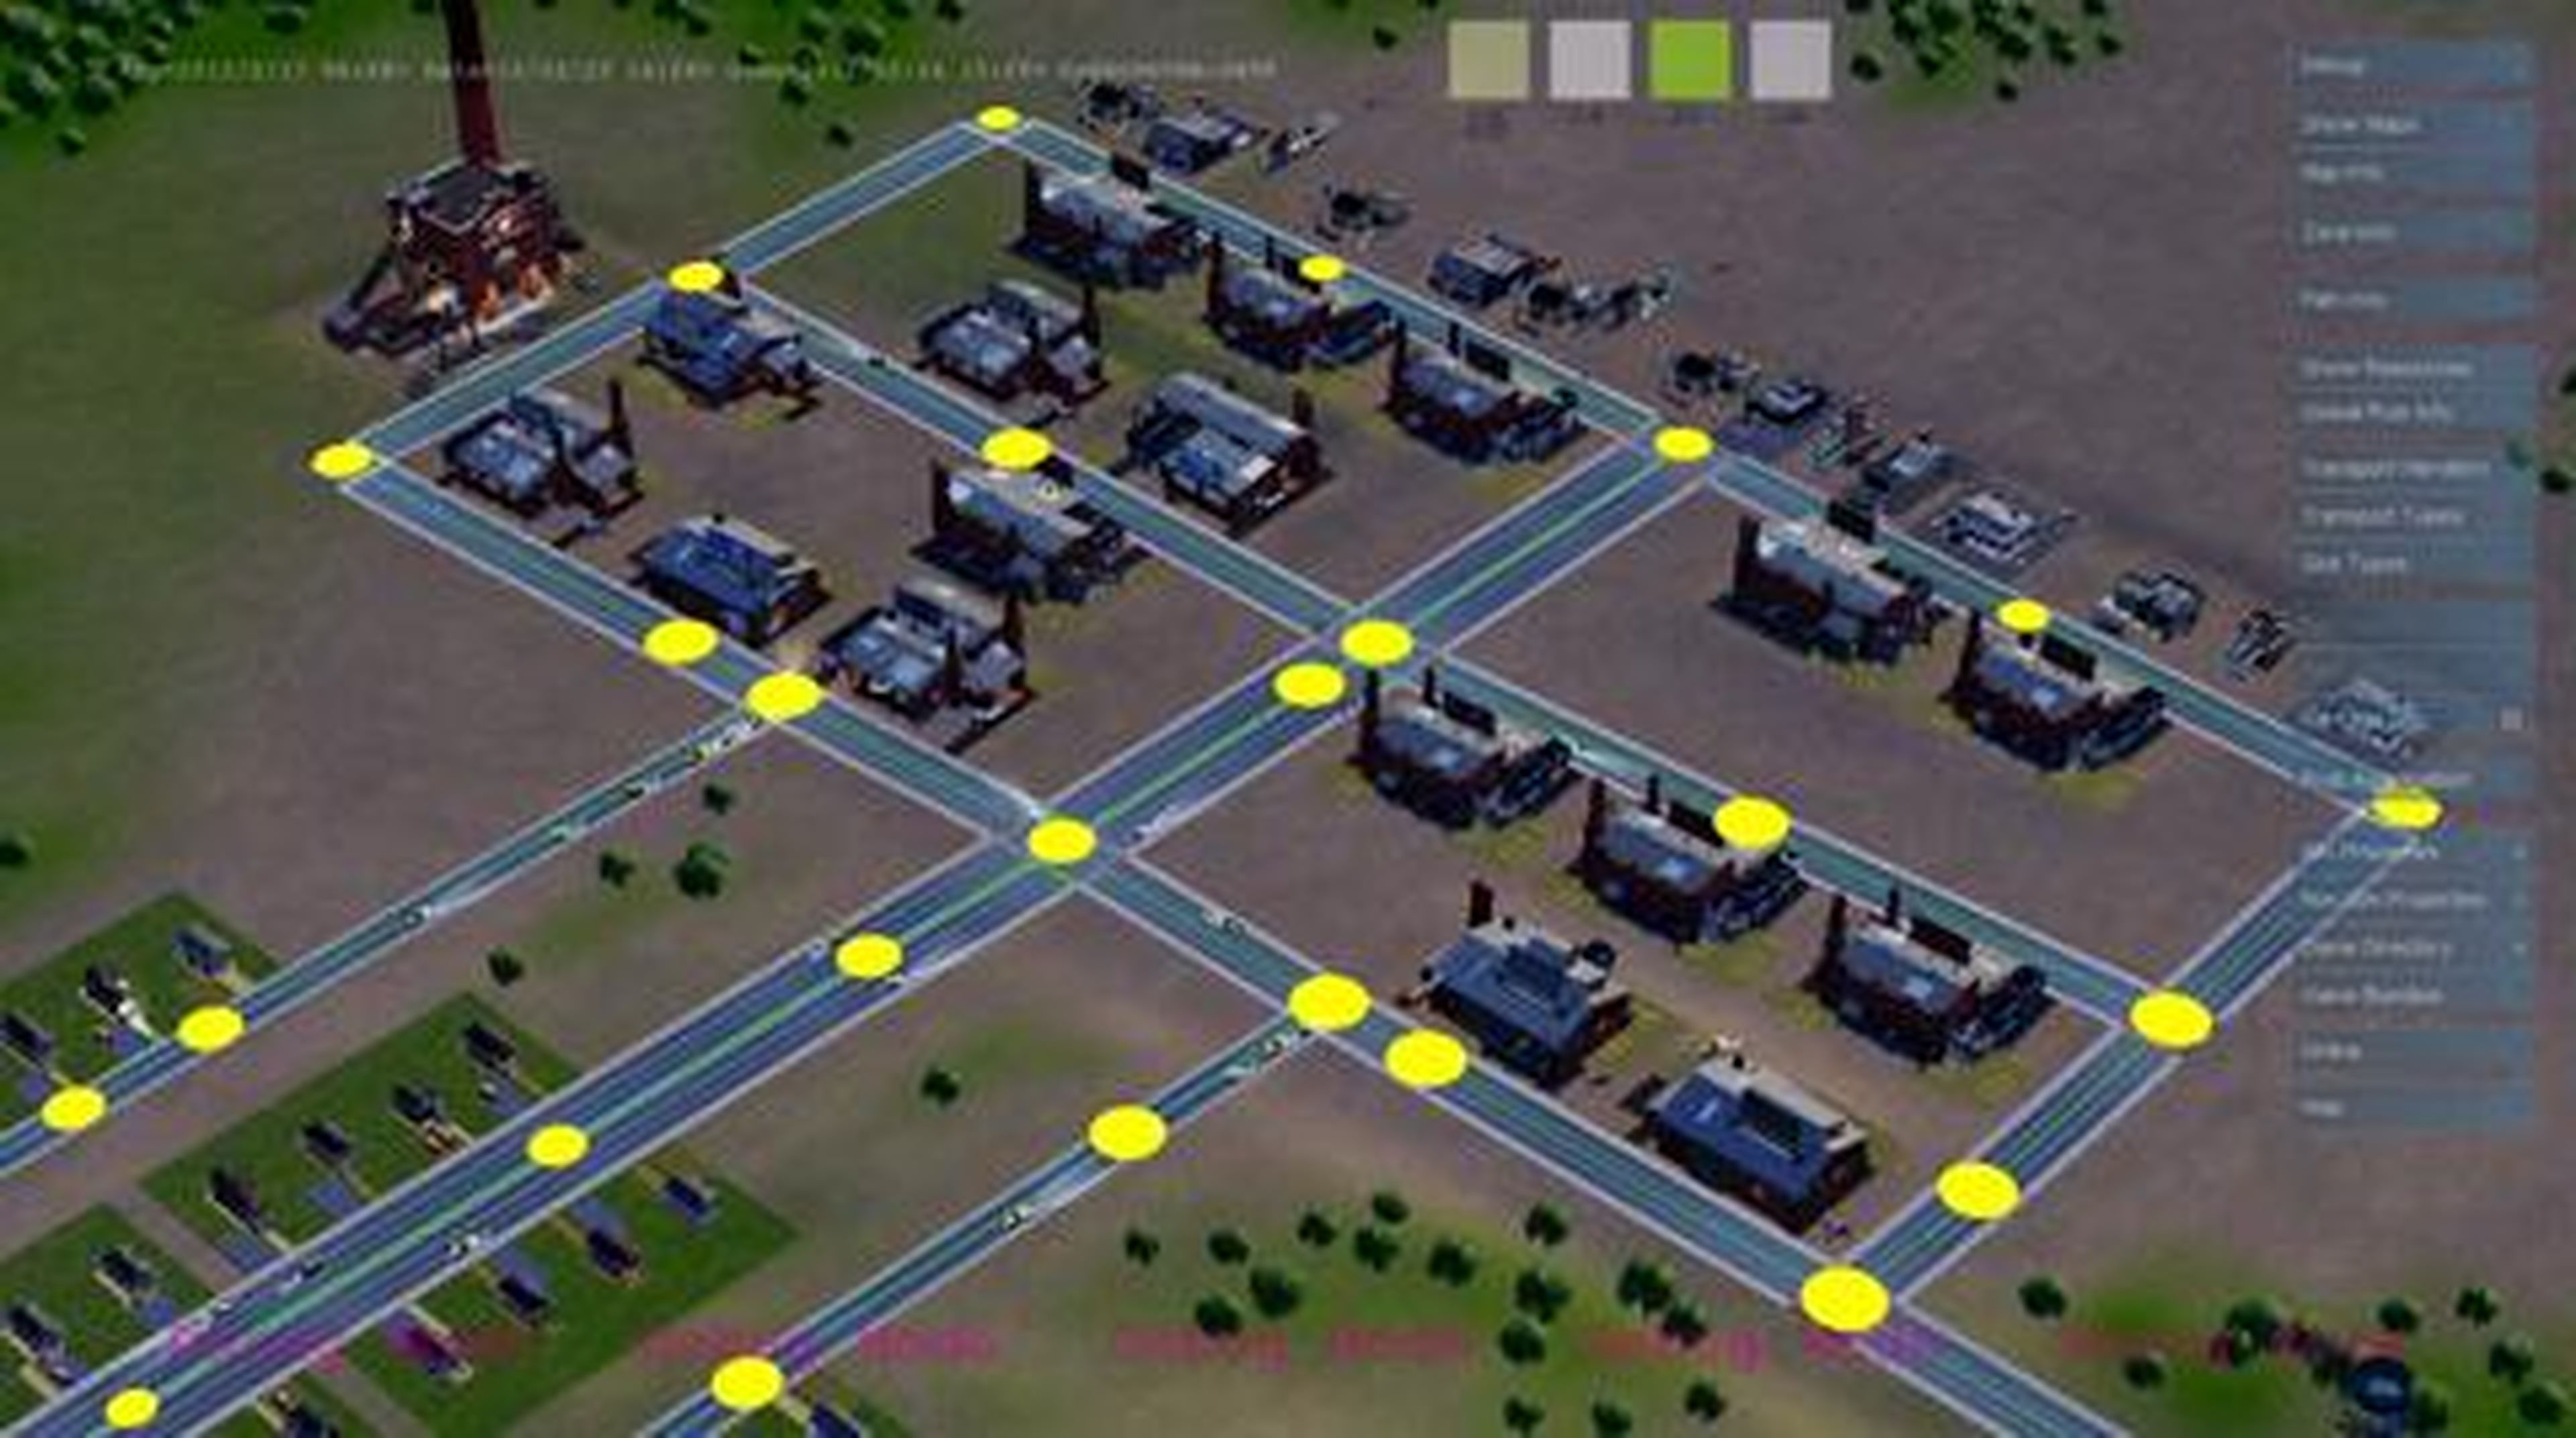 SimCity - The Economic Loop - Scenario 1 Trailer - PC Mac (HD) en HobbyNews.es